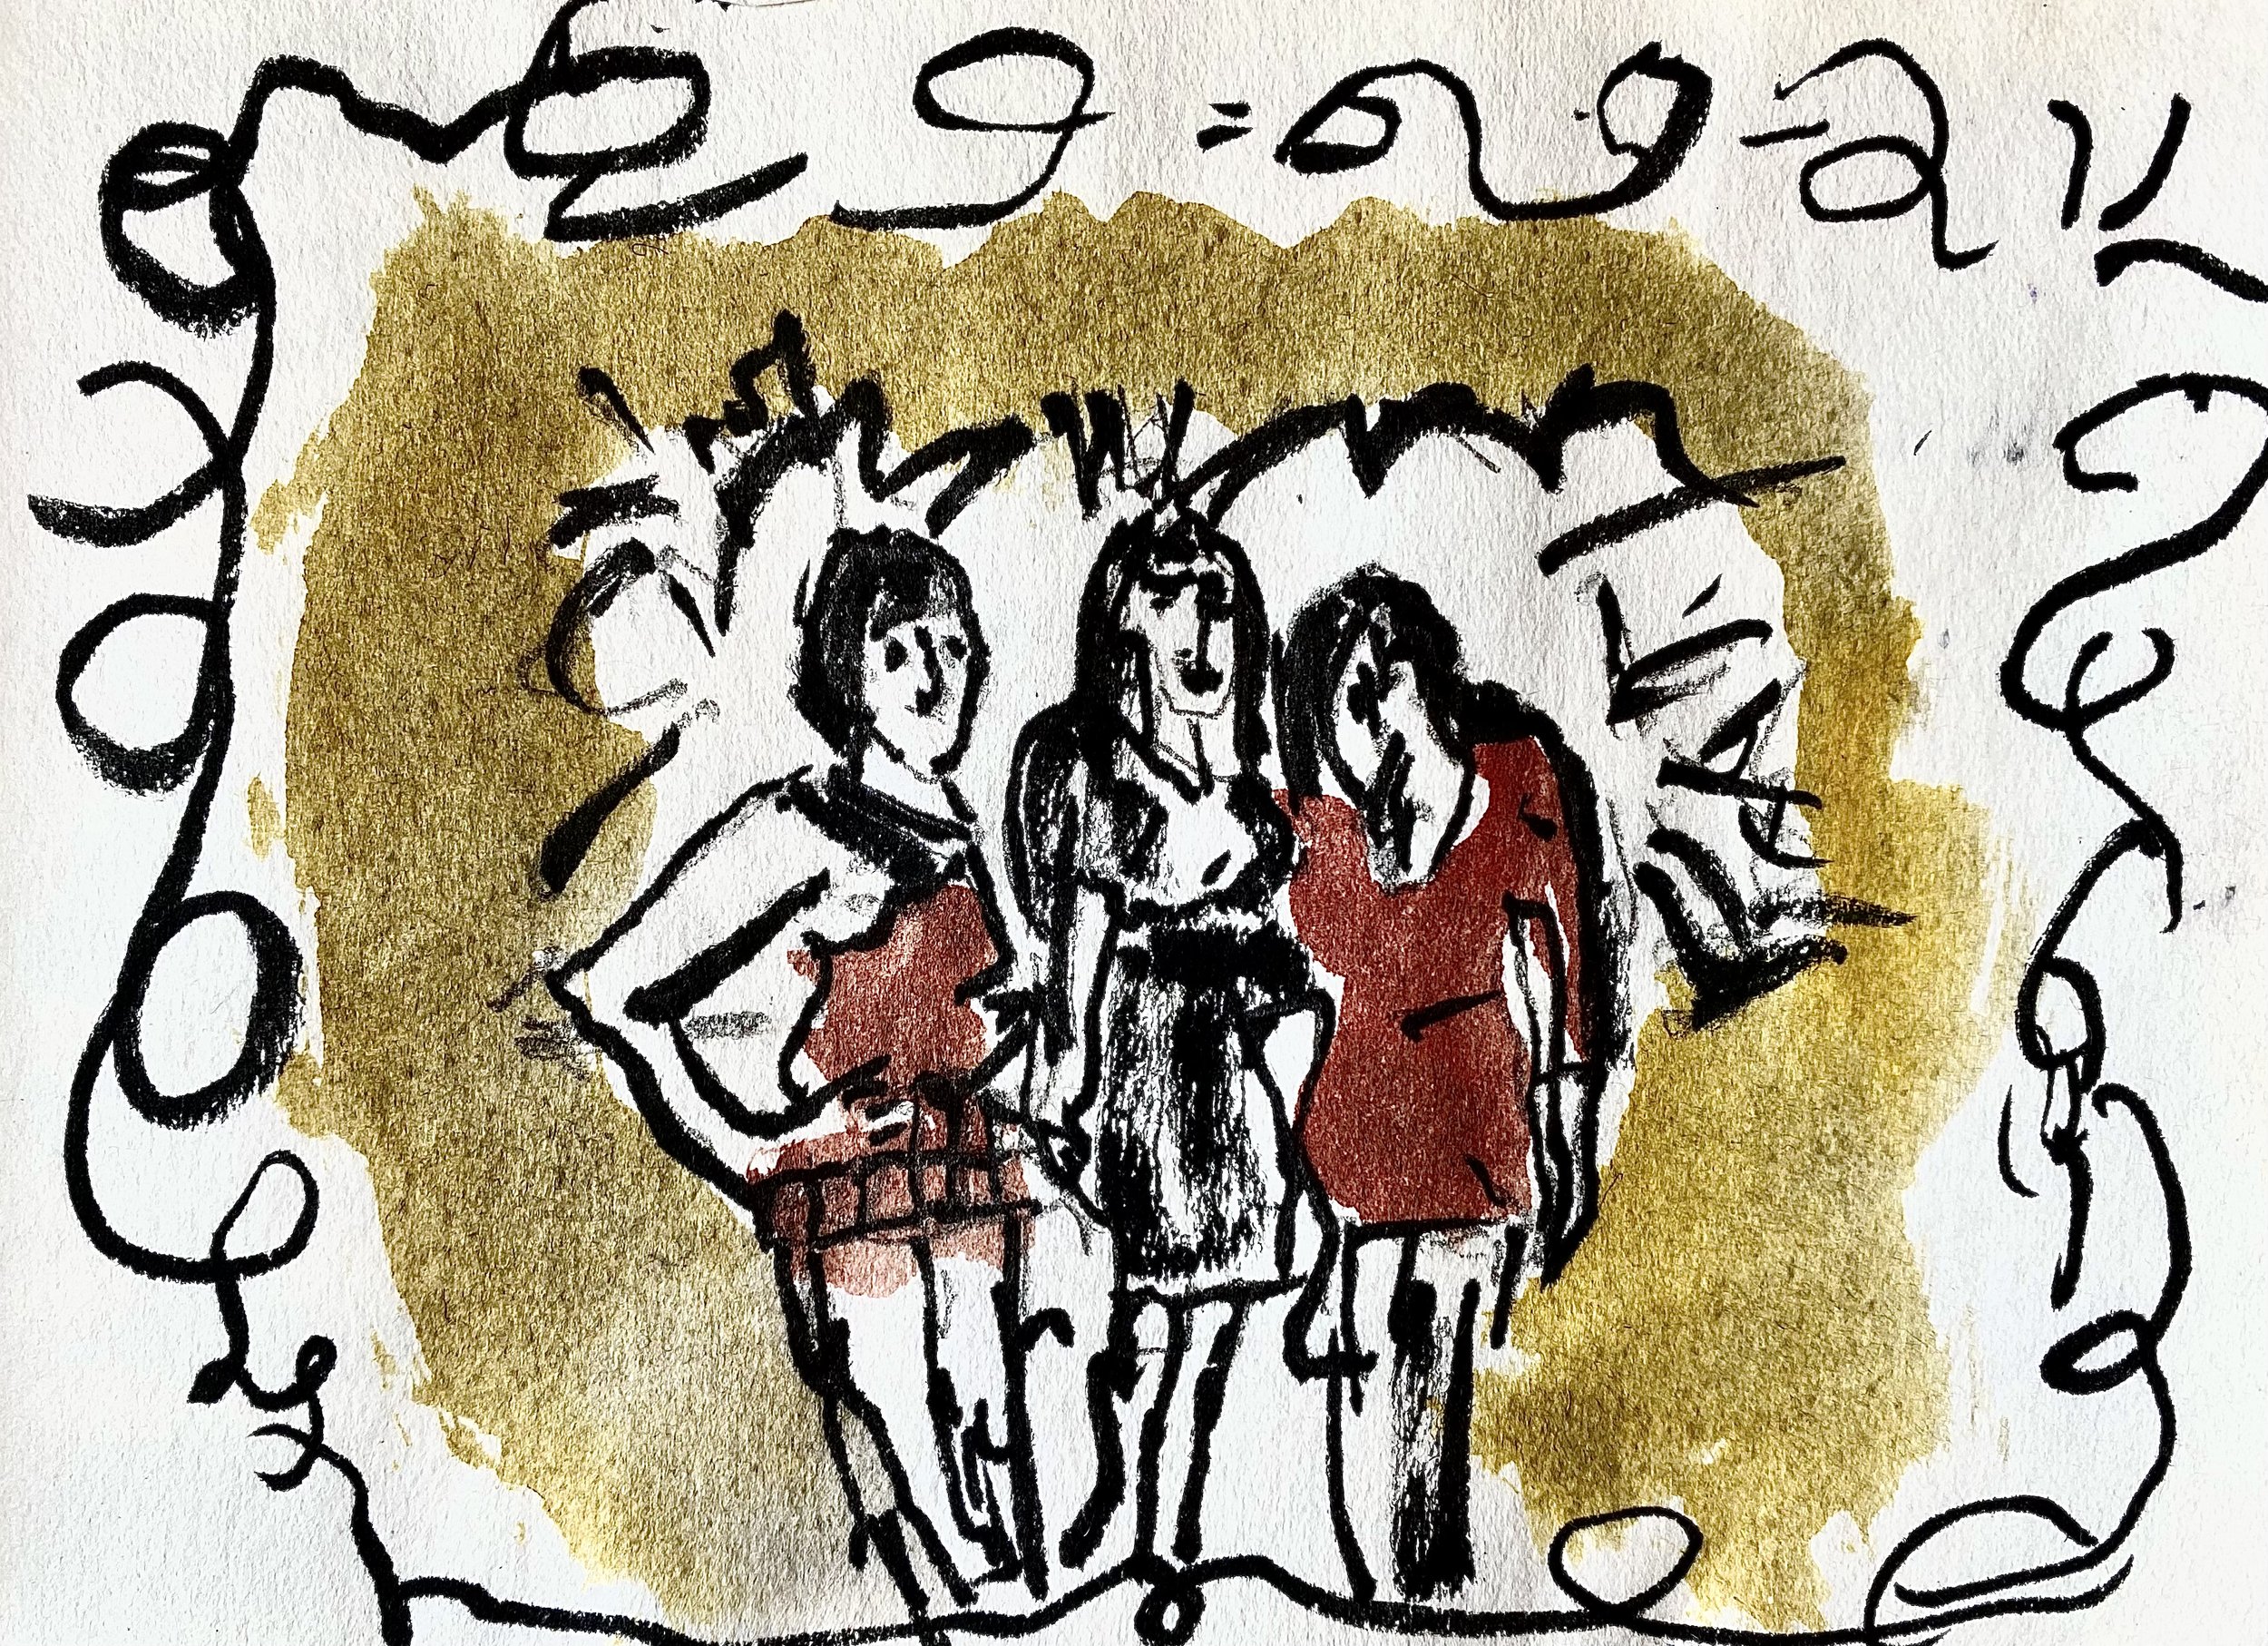 Three Ladies